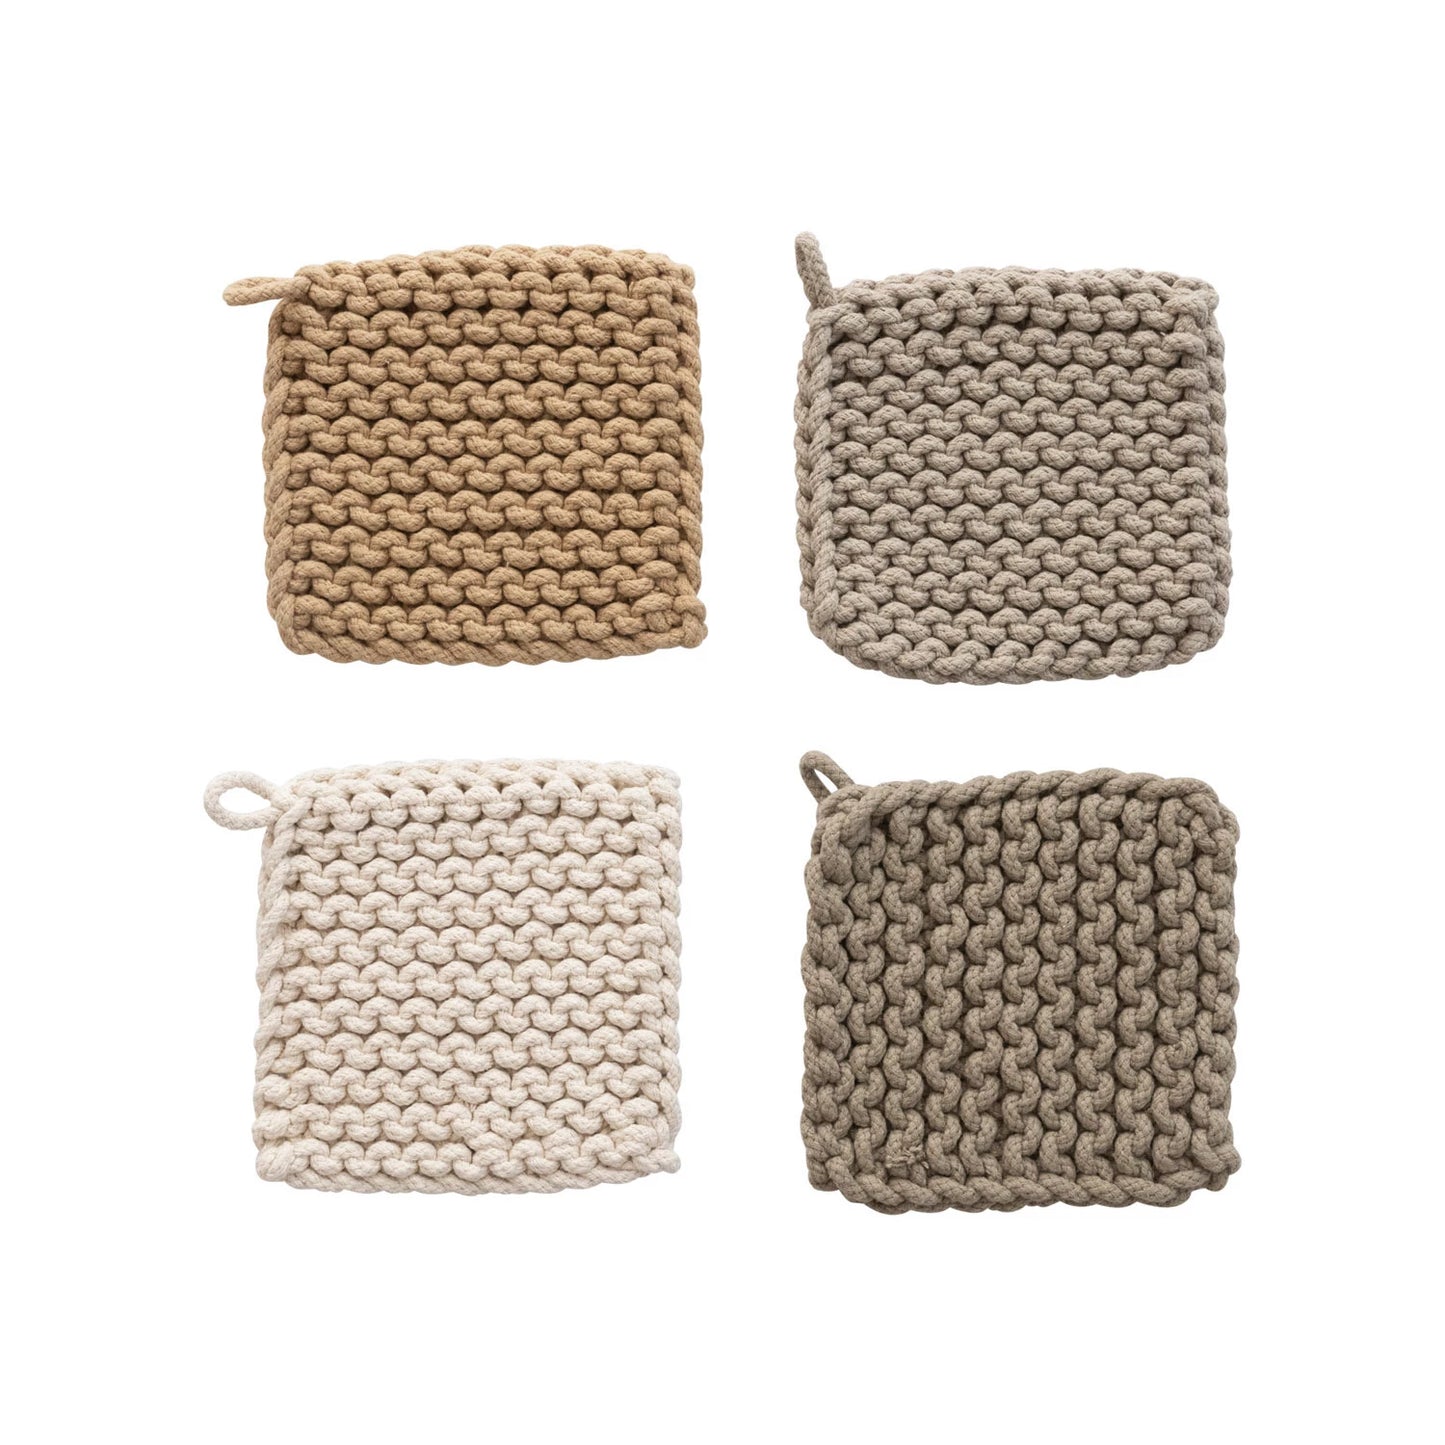 Crocheted Potholder/Trivet